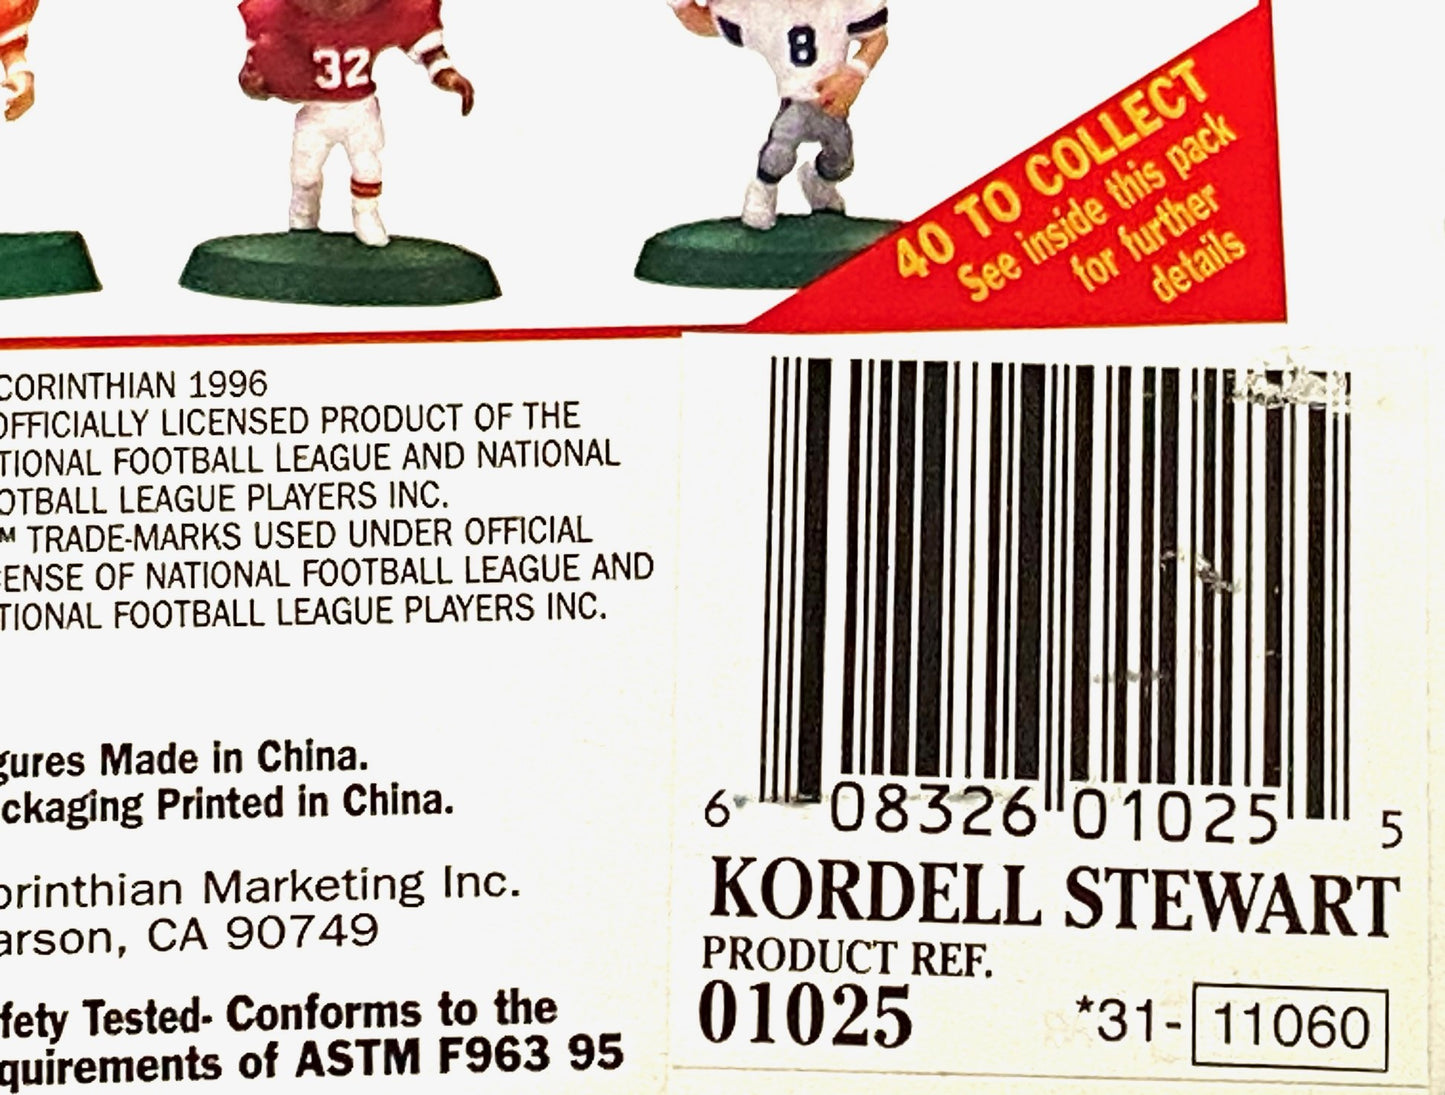 Kordell Stewart 1996 NFL Pittsburgh Steelers Headliner Figurine by Corinthian